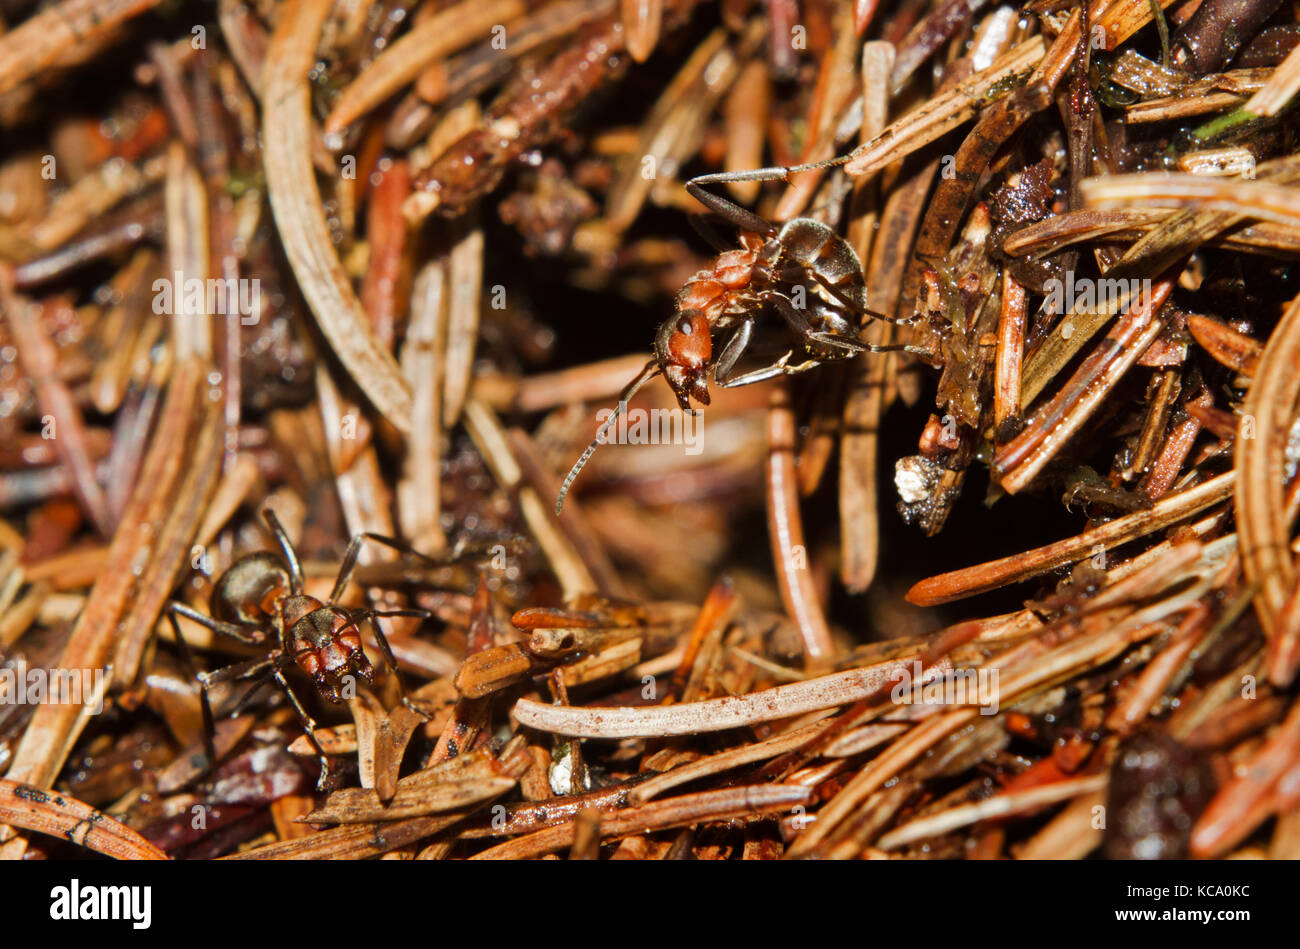 Fourmi rouge prendre une position plus dynamique, prêt à pulvériser de l'acide formique à un attaquant de son nid Banque D'Images